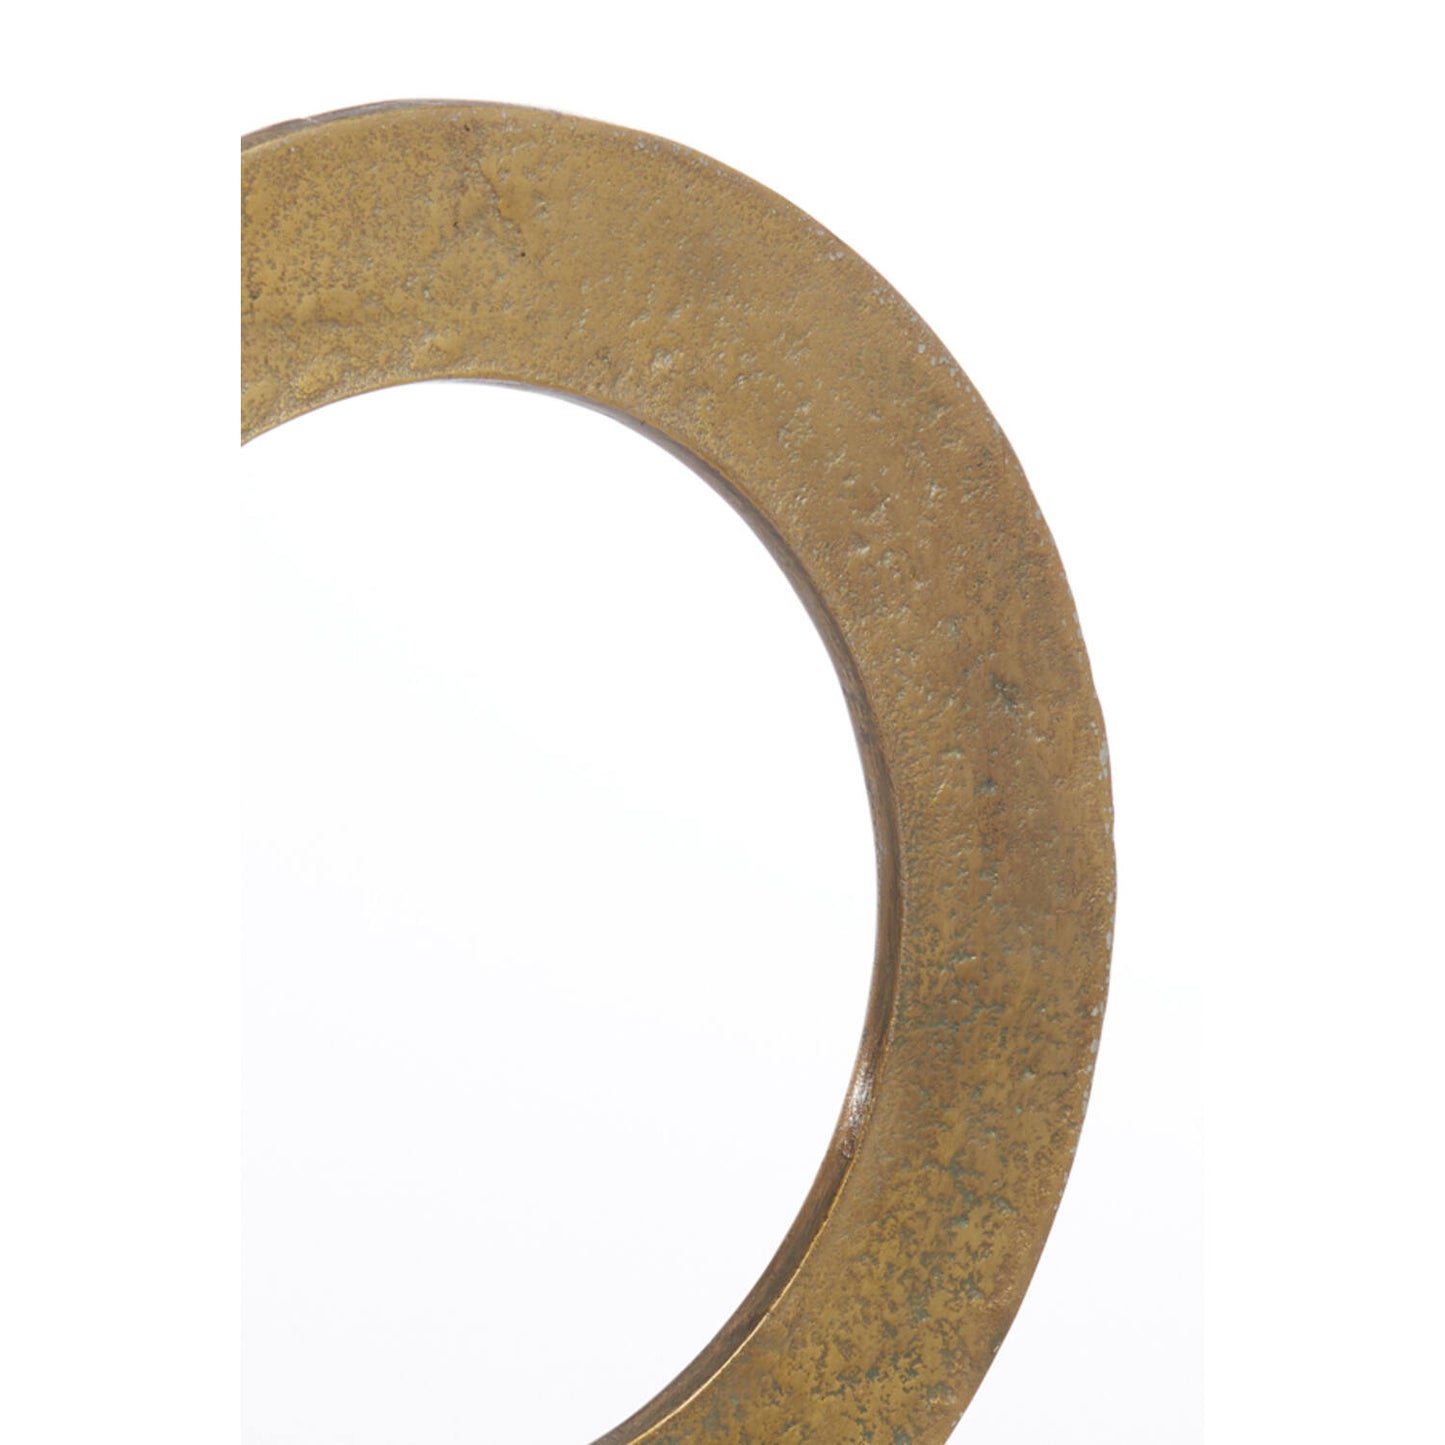 Ring-Ornament op voet goud/zwart WAIWO (S)